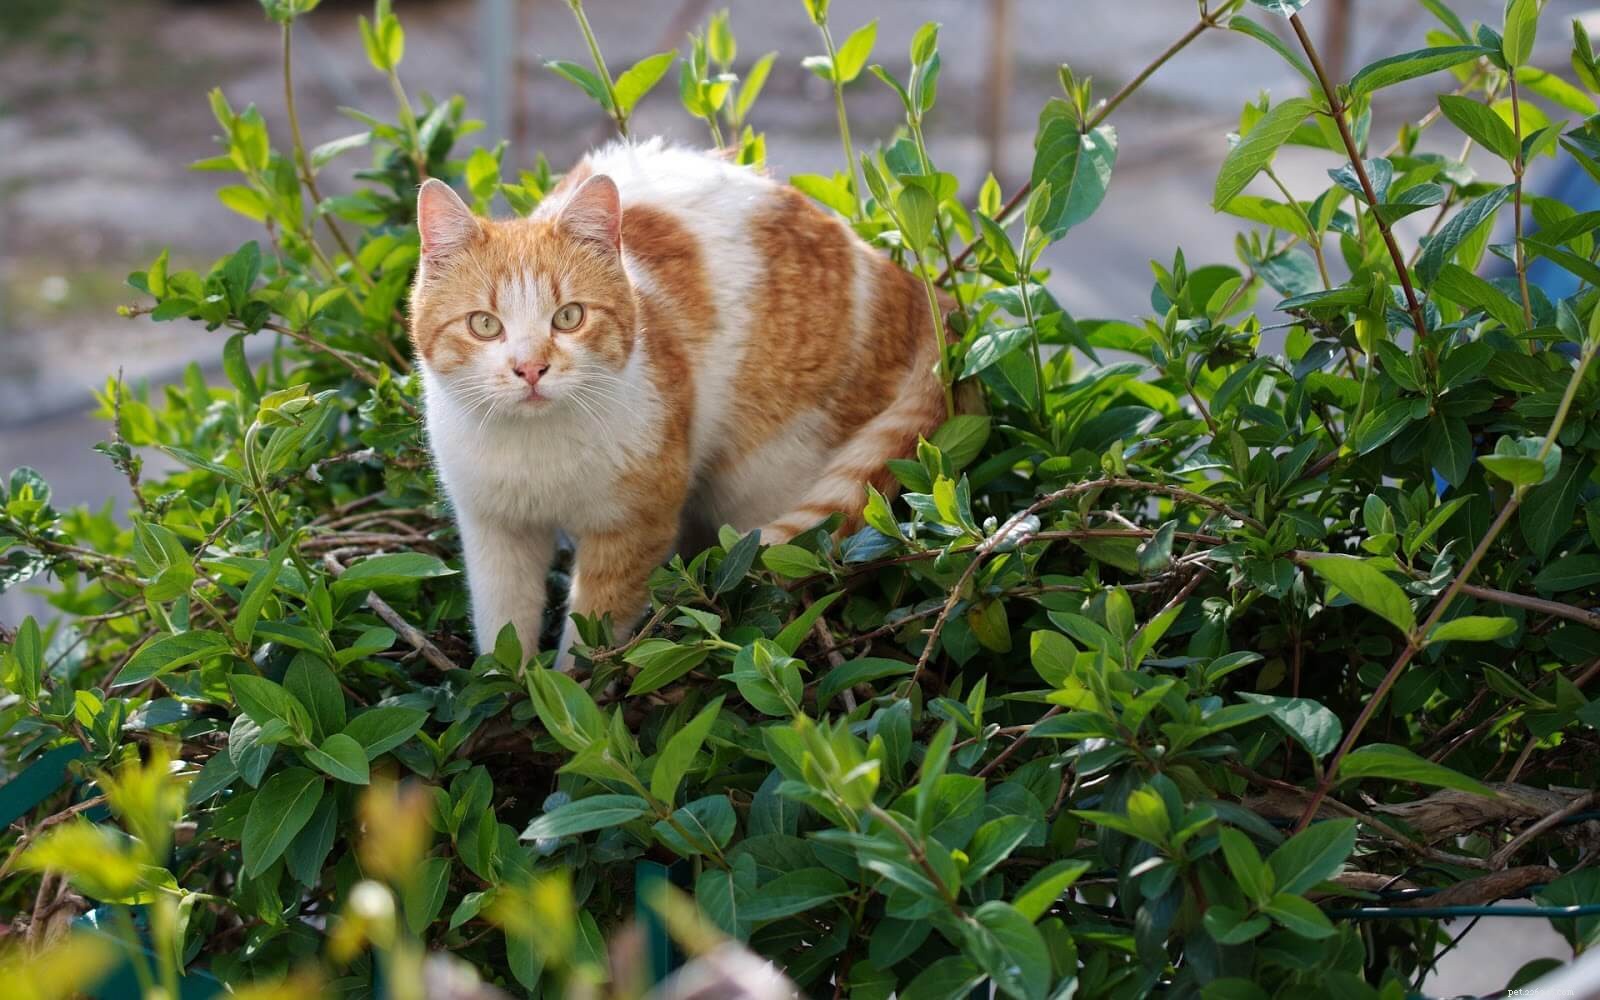 Mantenere il gattino al sicuro:evitare e curare le piccole abrasioni